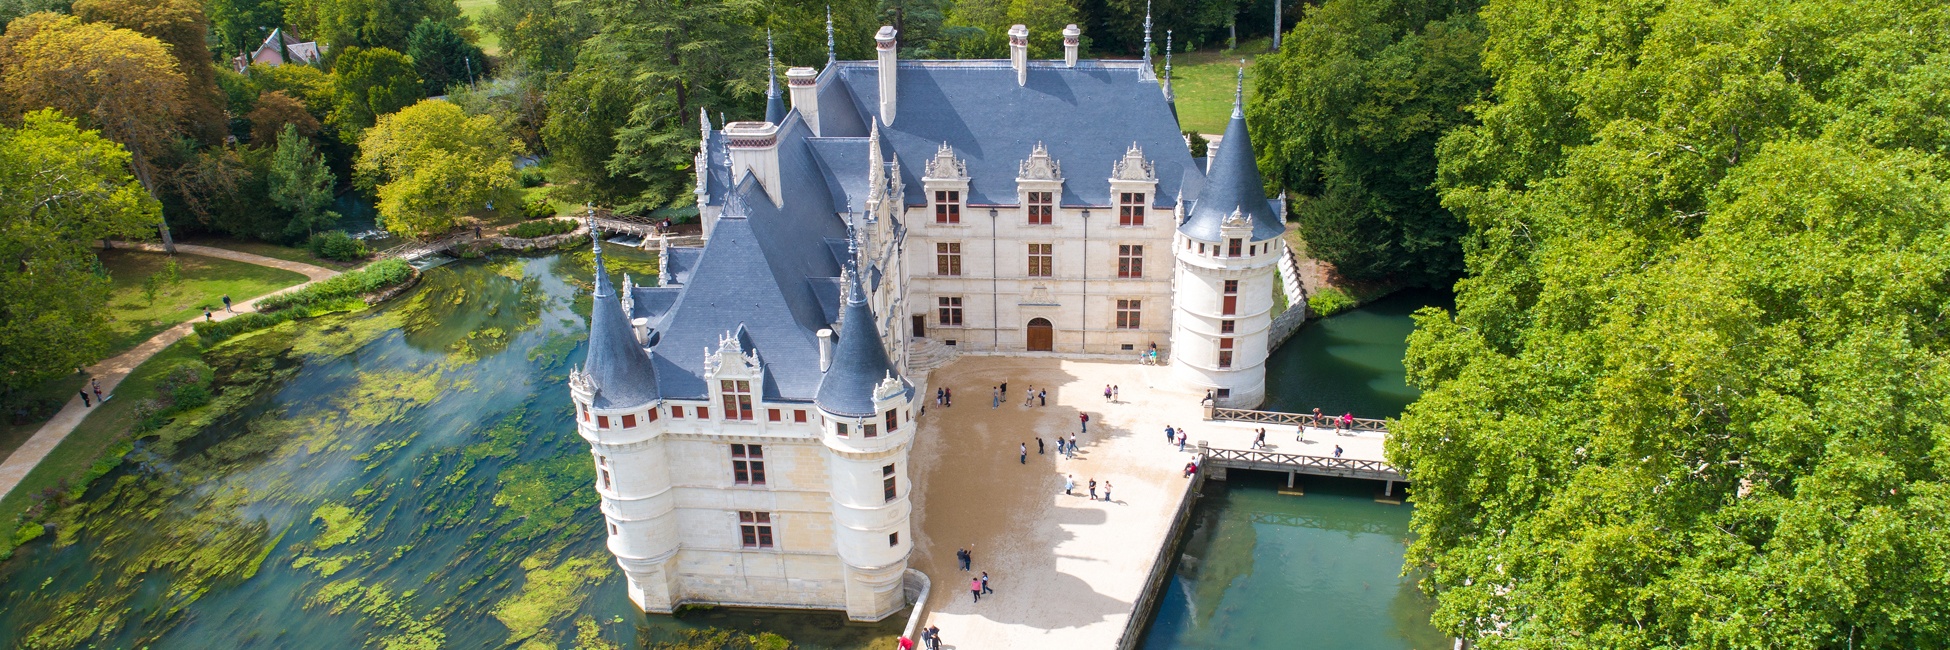 NDN_PP2 - Crucero por los Castillos del Loira